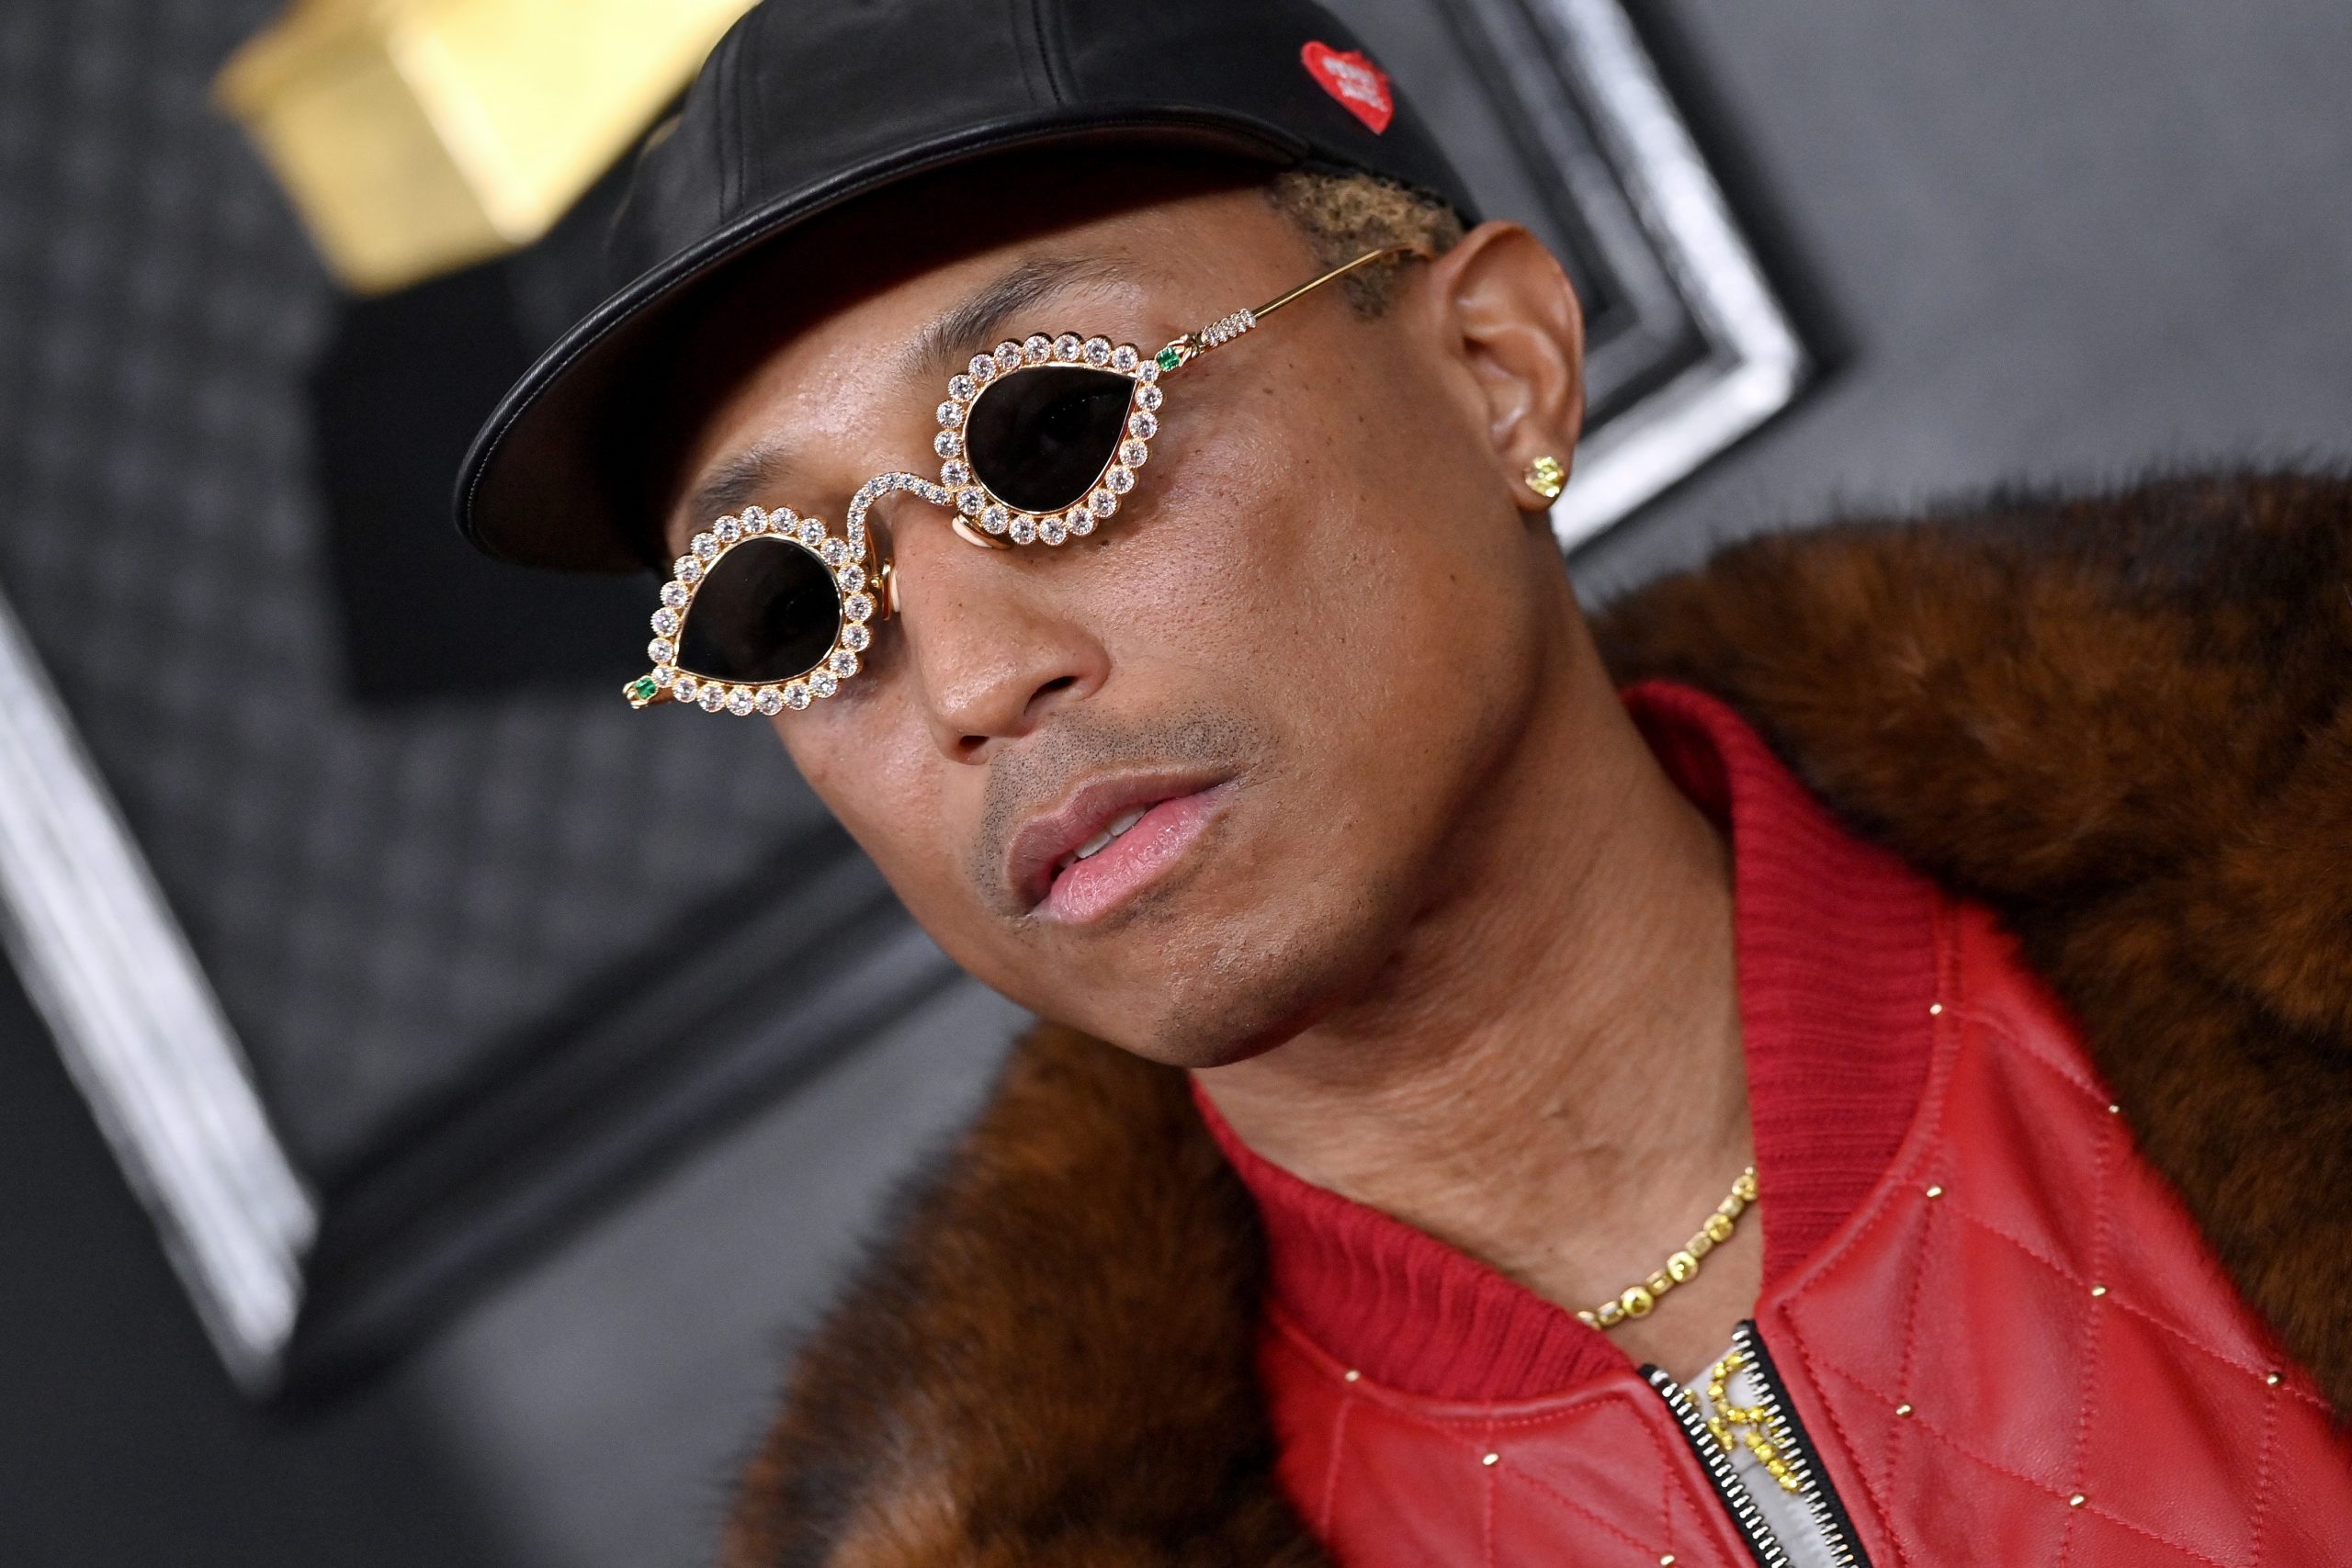 Ο Pharrell Williams είναι ο νέος Creative Director των ανδρικών συλλογών του οίκου Louis Vuitton